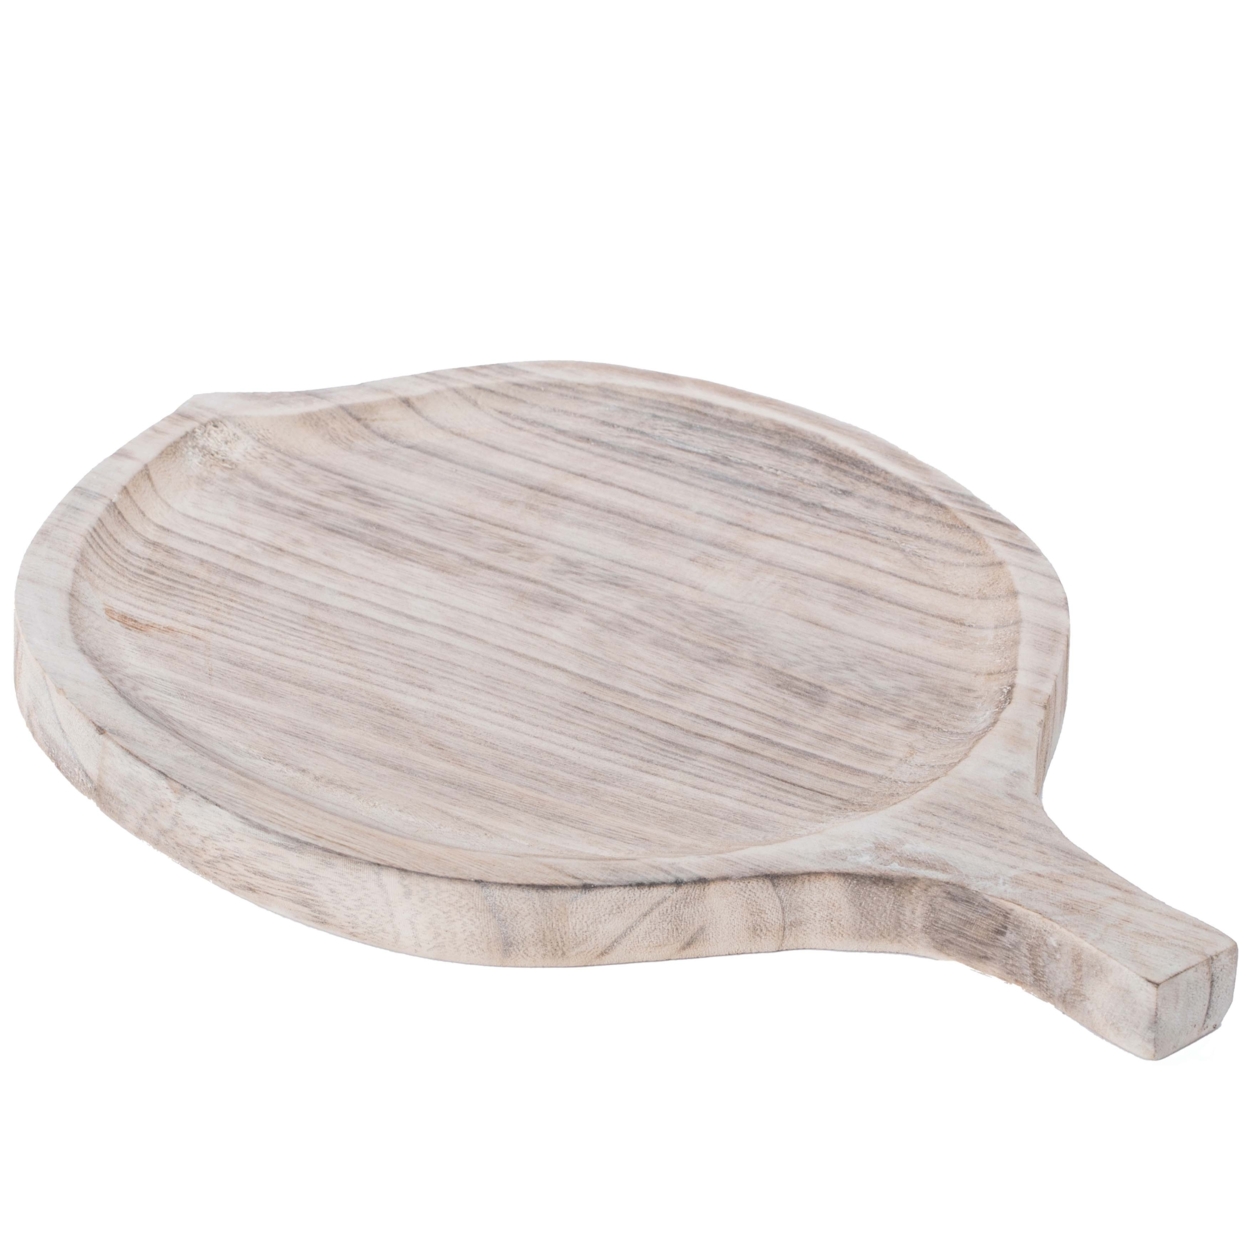 Wooden Leaf Shape Serving Tray Display Platter